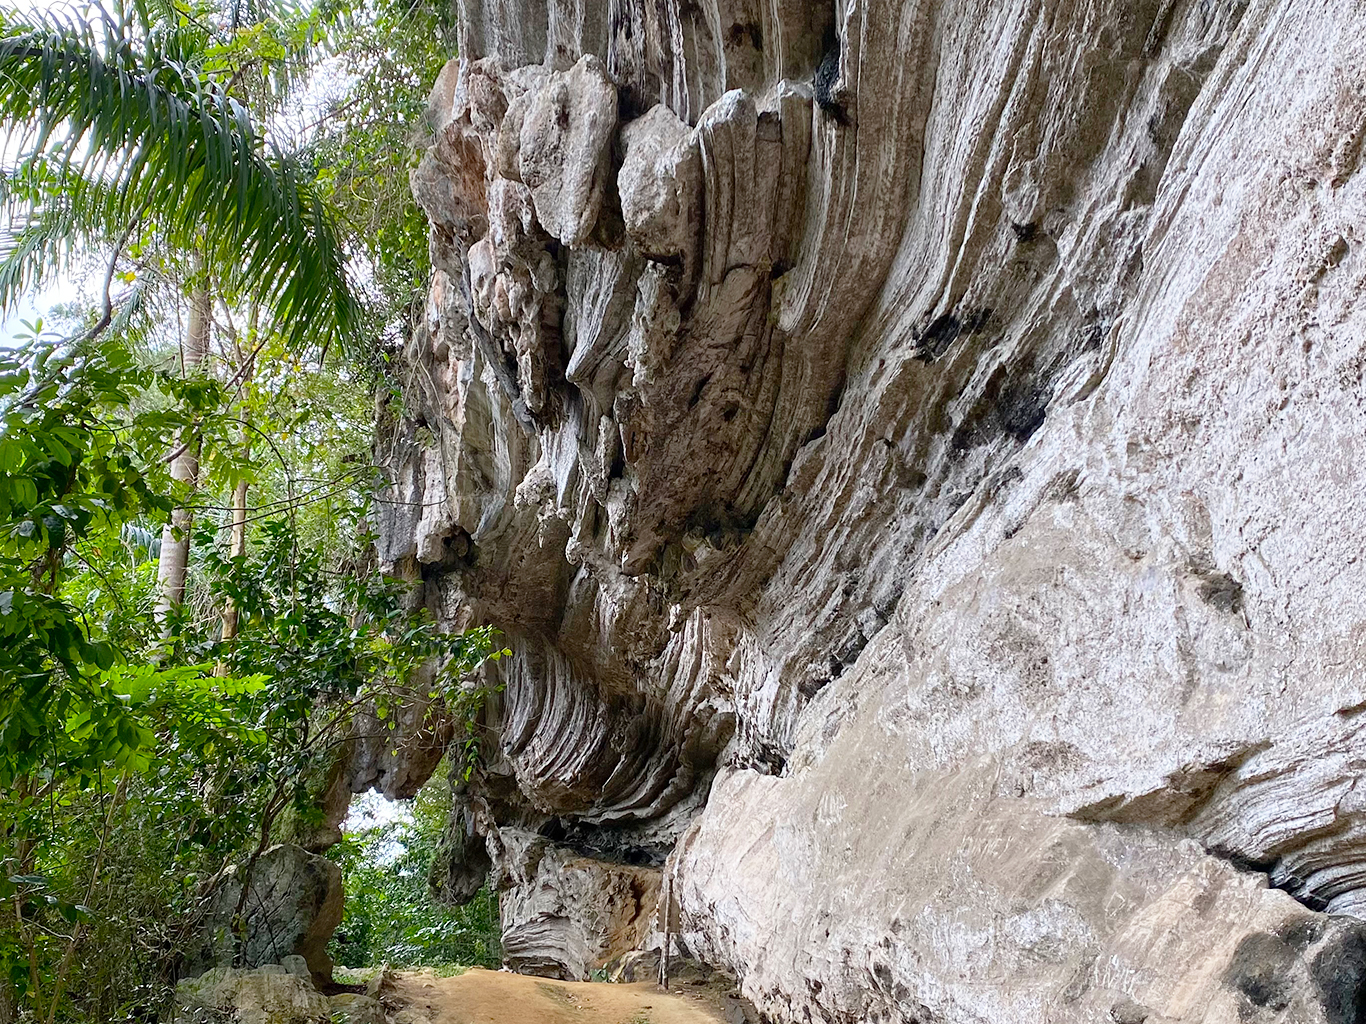 Vápencové pohoří Escambray je plné jeskyní, převisů a dalších krasových jevů